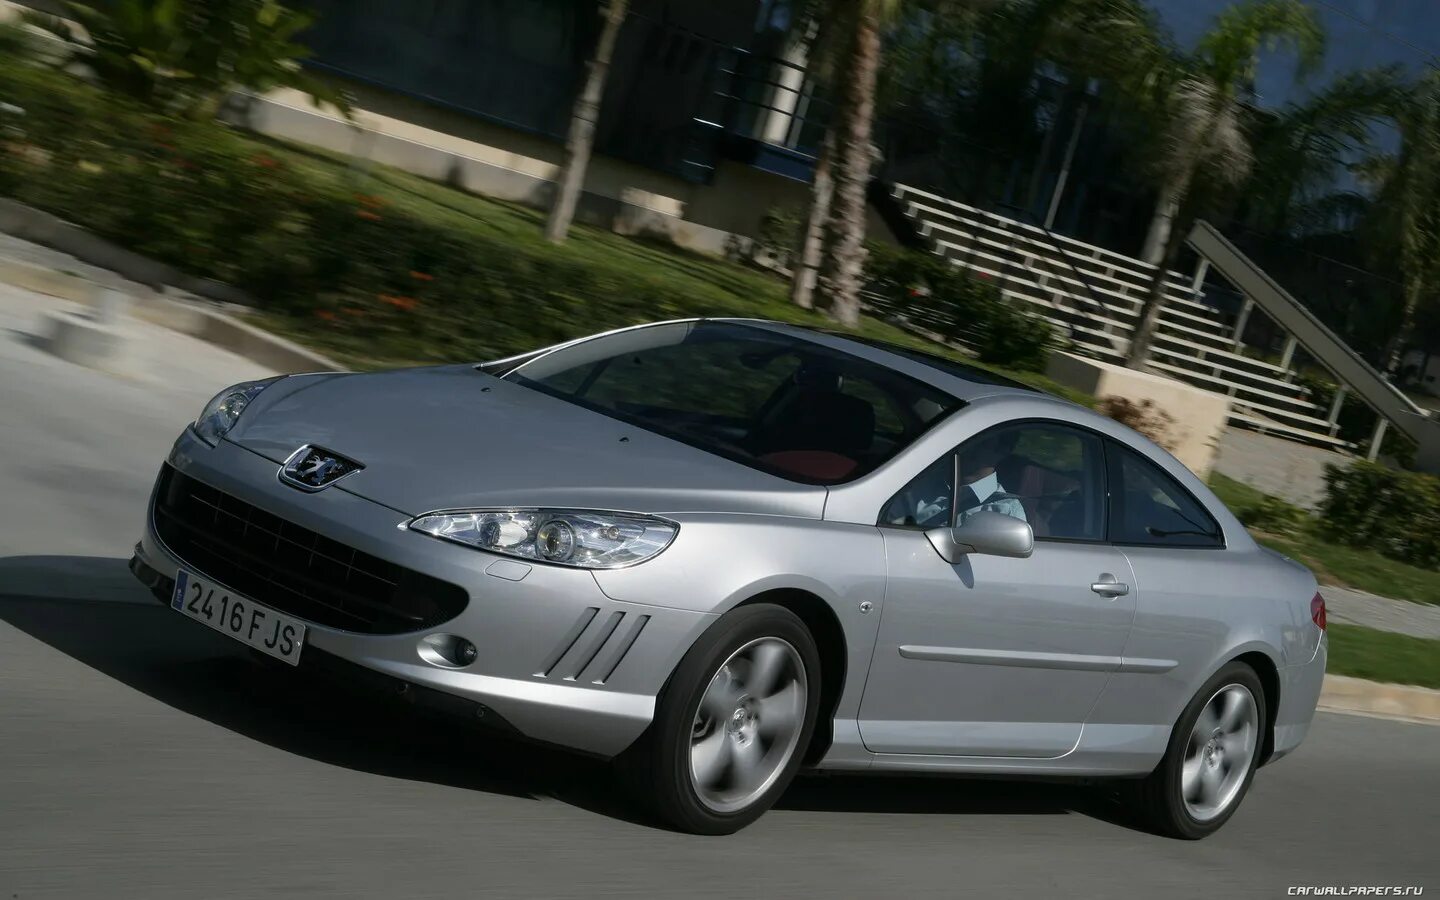 Peugeot 407 Coupe 2007. Peugeot 407 Coupe White. Peugeot 407 Coupe Full. Пежо 407 купе 2007. Купить пежо в красноярске